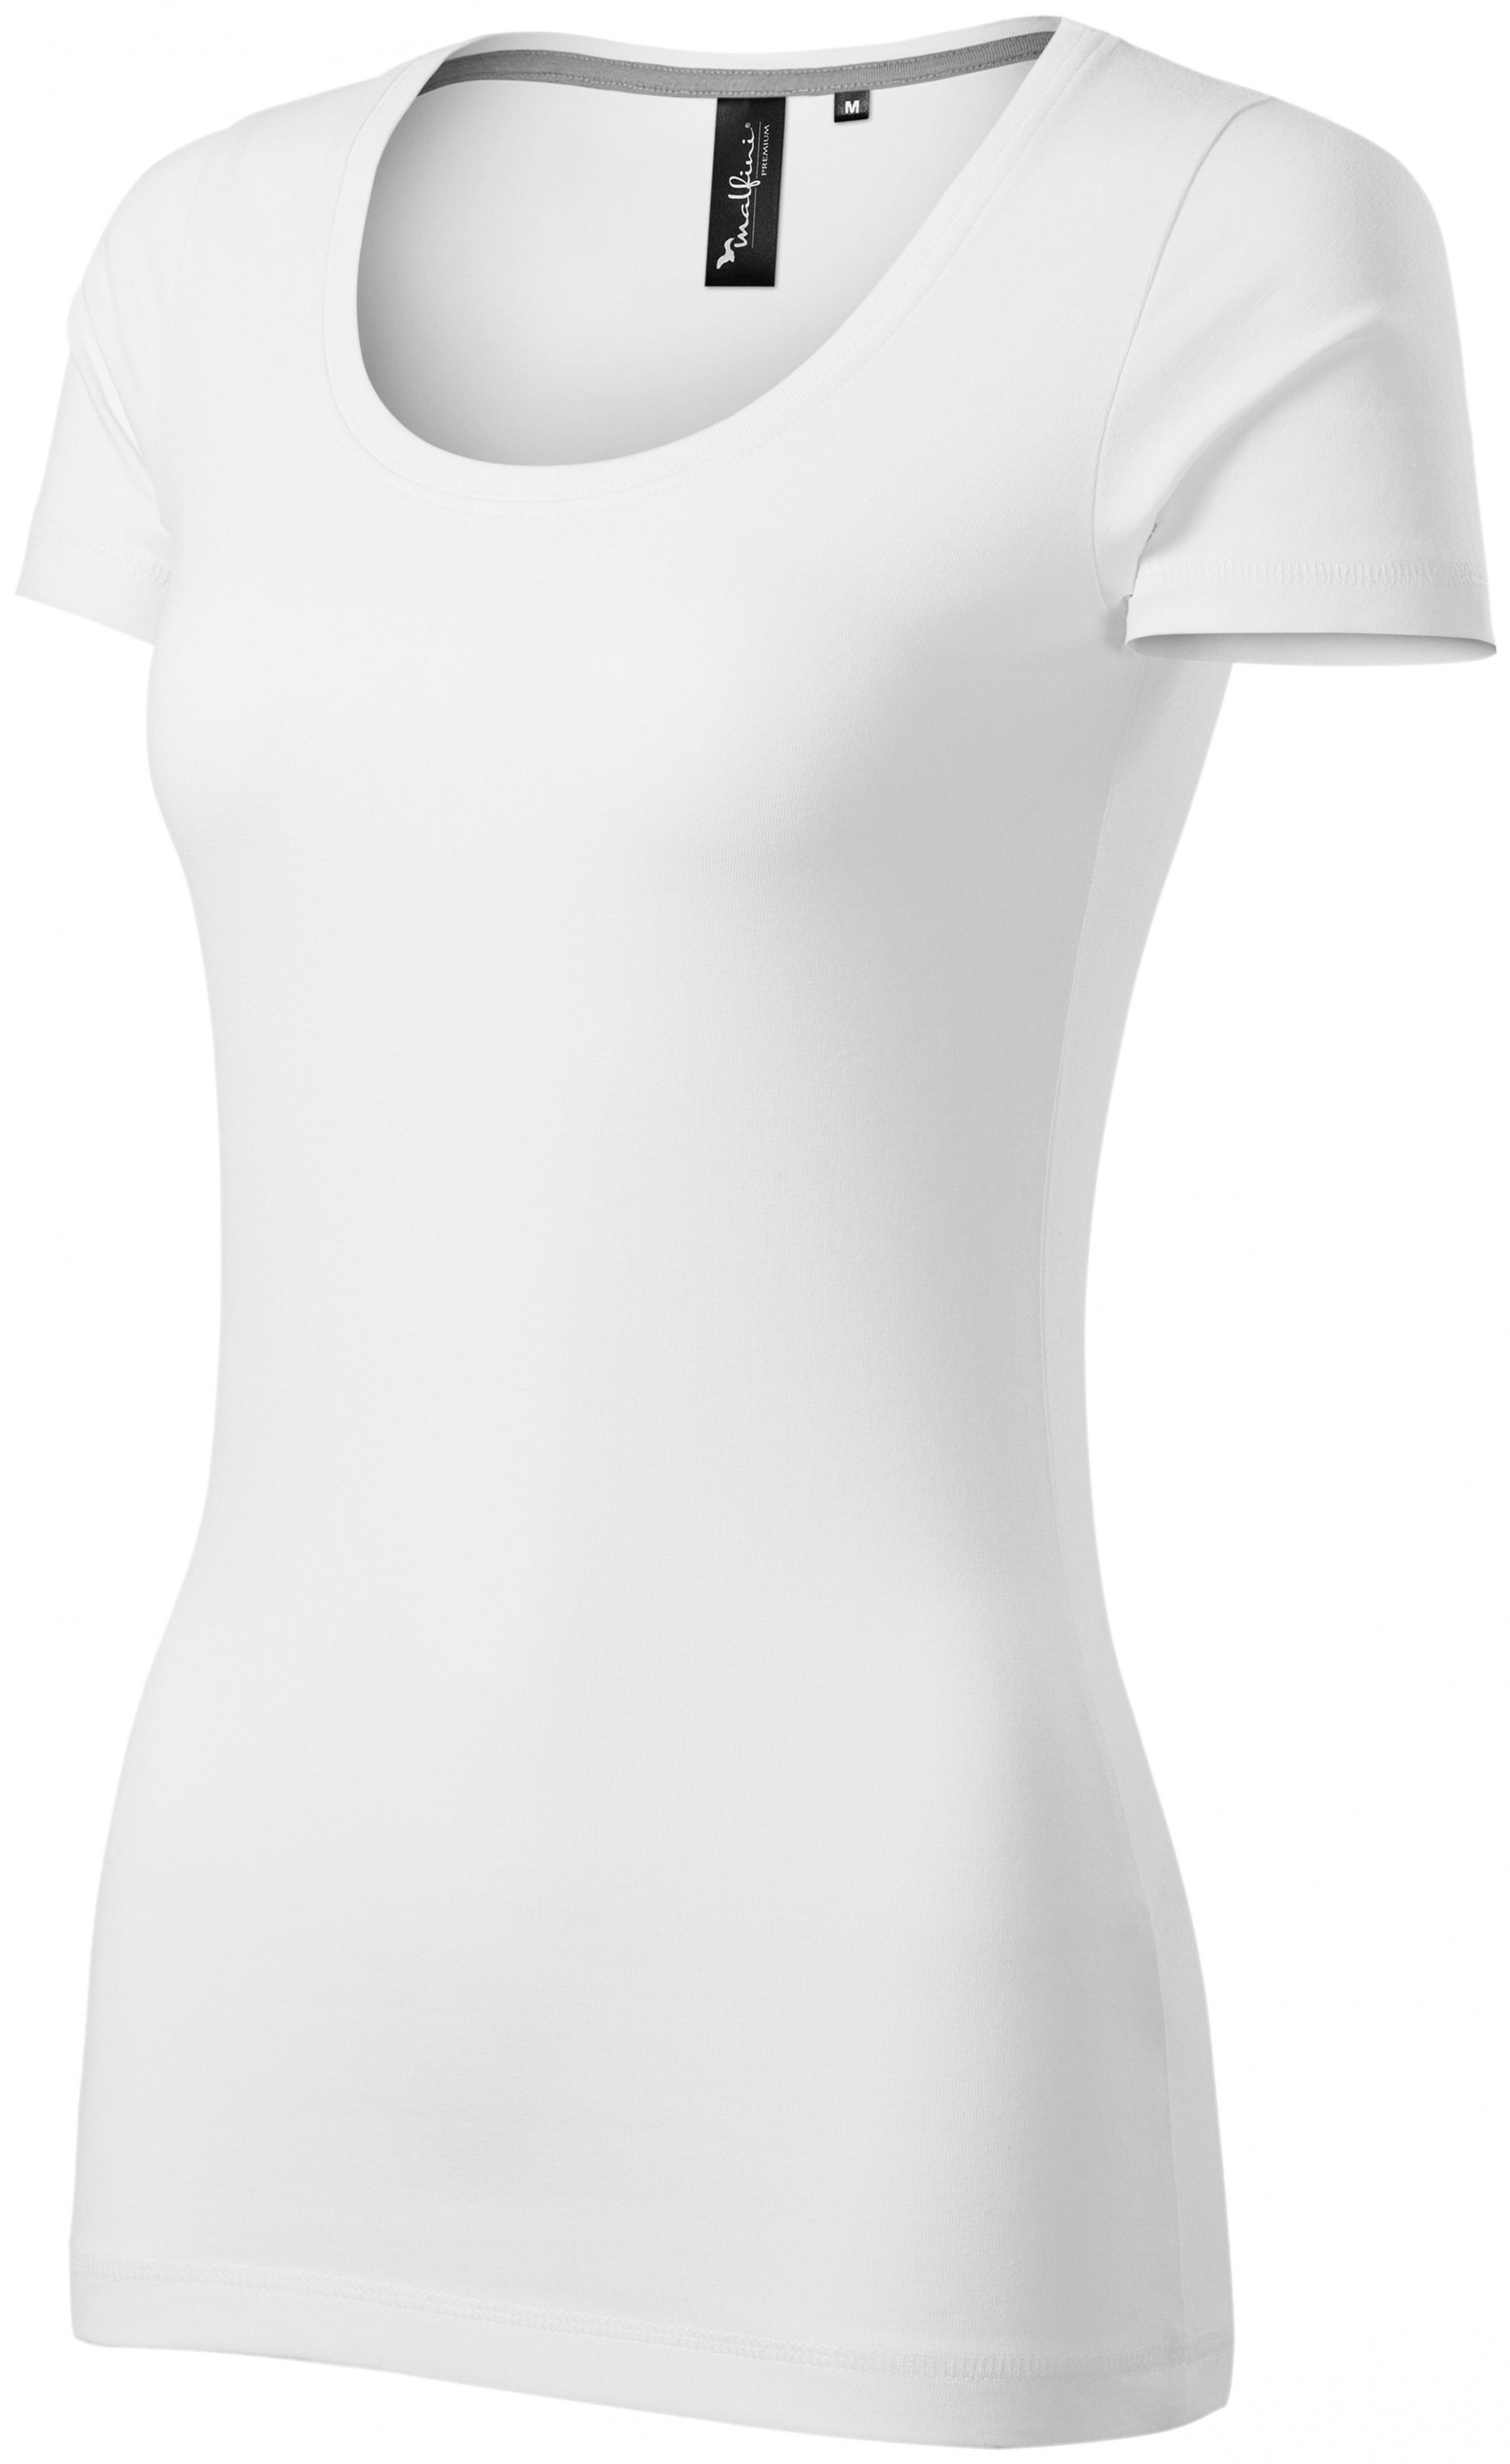 Dámske tričko s ozdobným prešitím, biela, XL